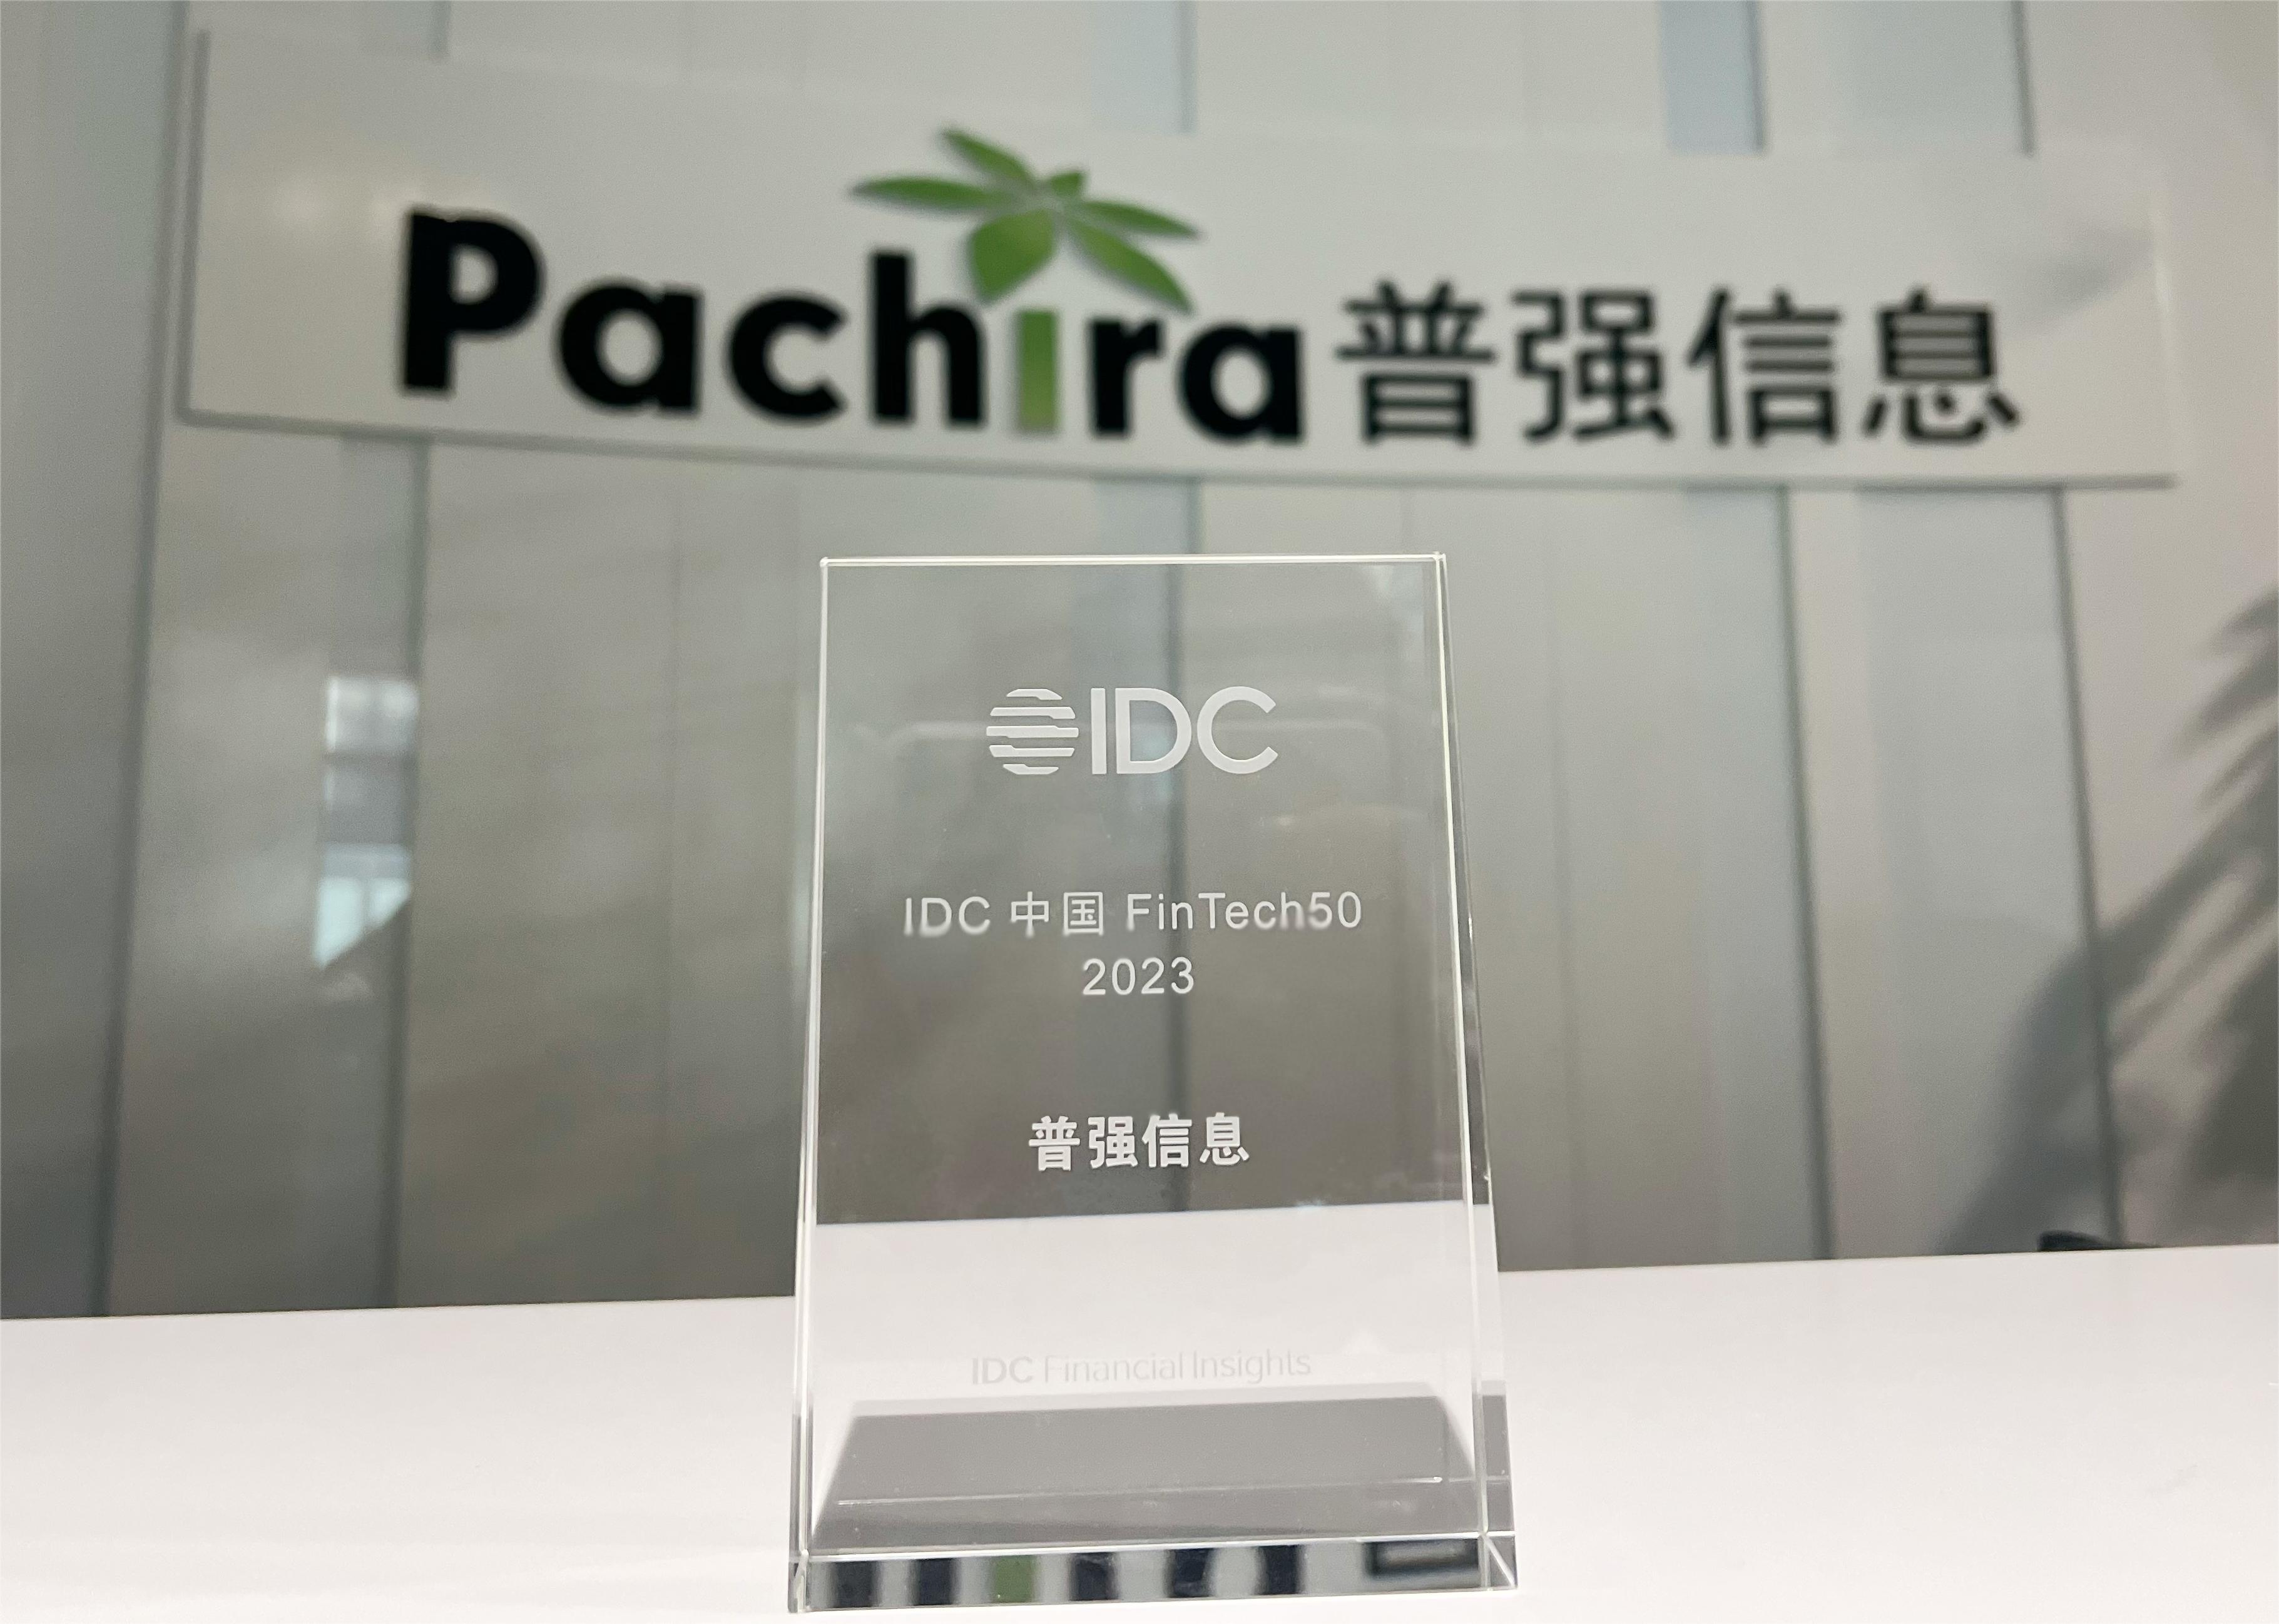 普强再度荣登IDC中国 FinTech 50